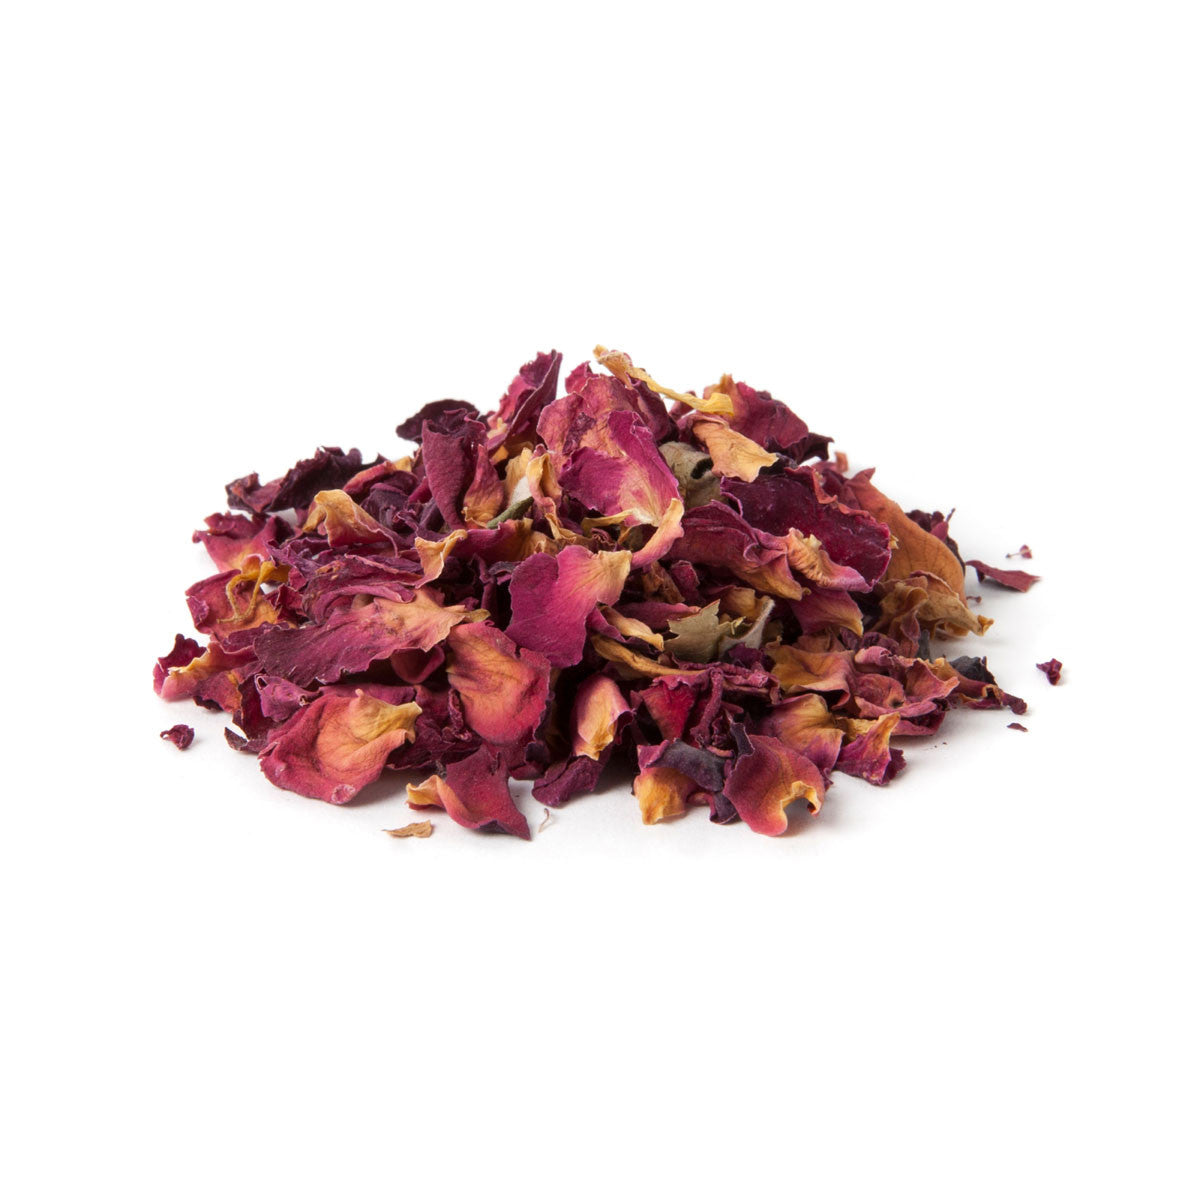 Rose Petals organic tea from Shanti Tea